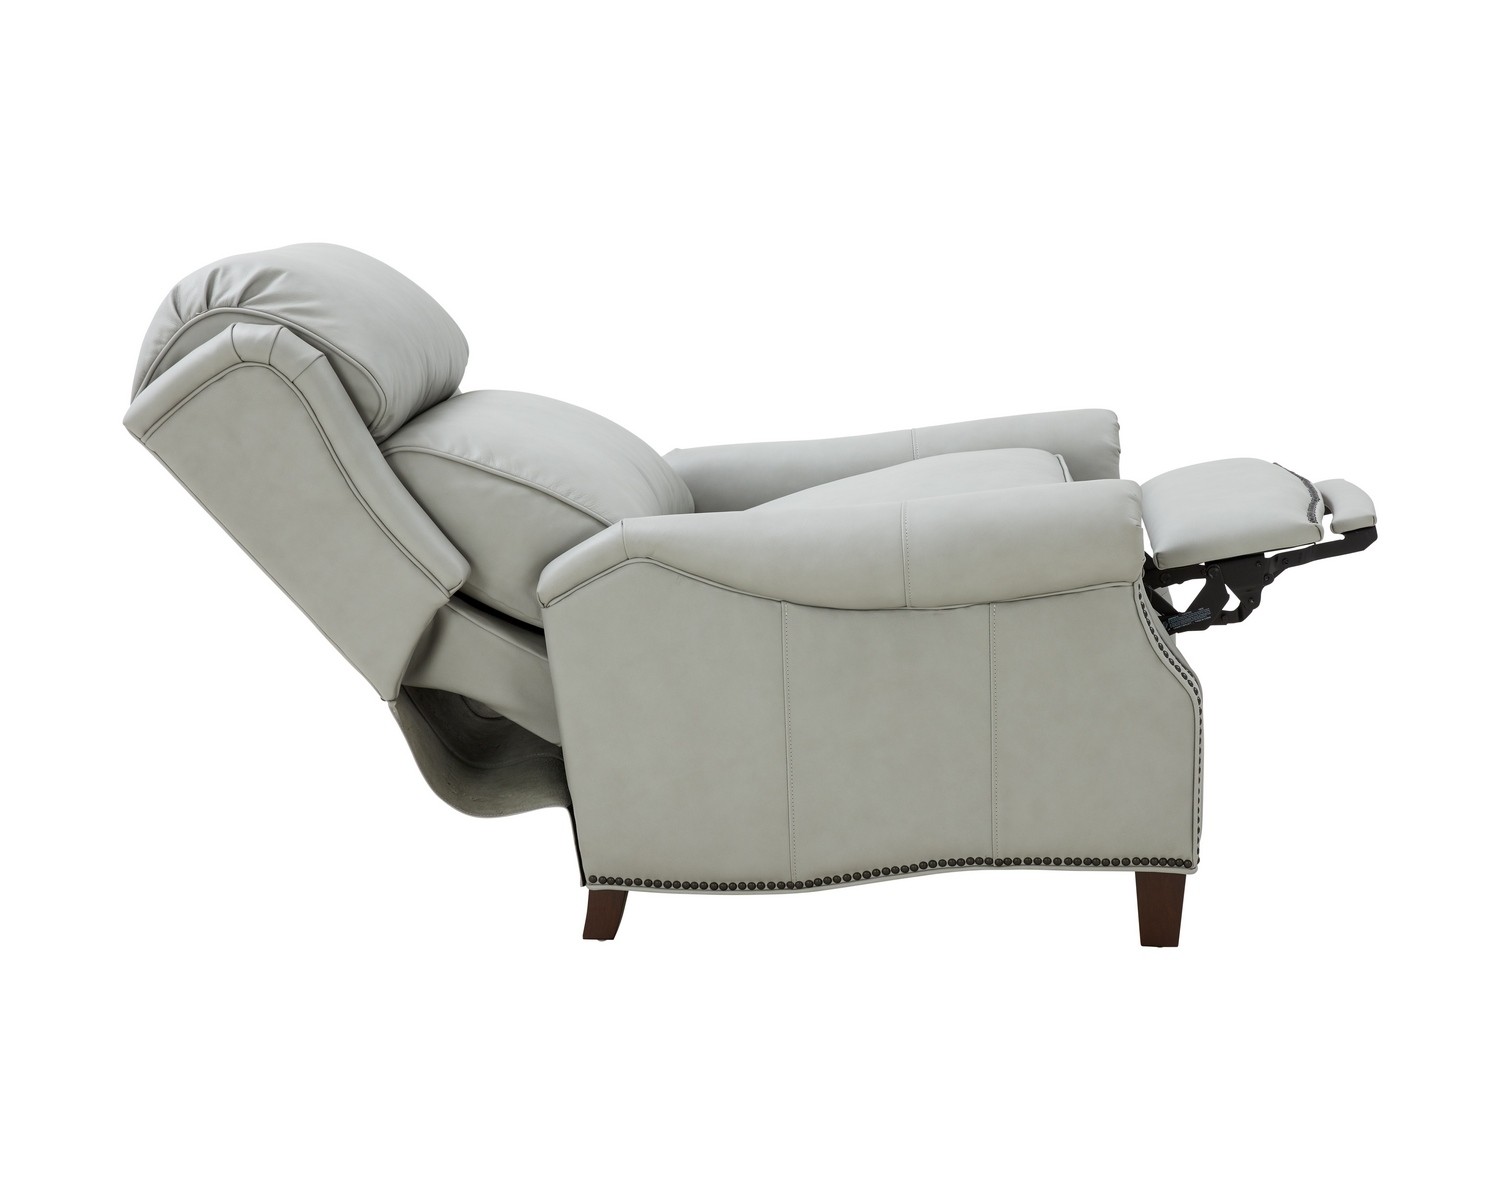 Barcalounger Meade Recliner Chair - Corbett Chromium/All Leather